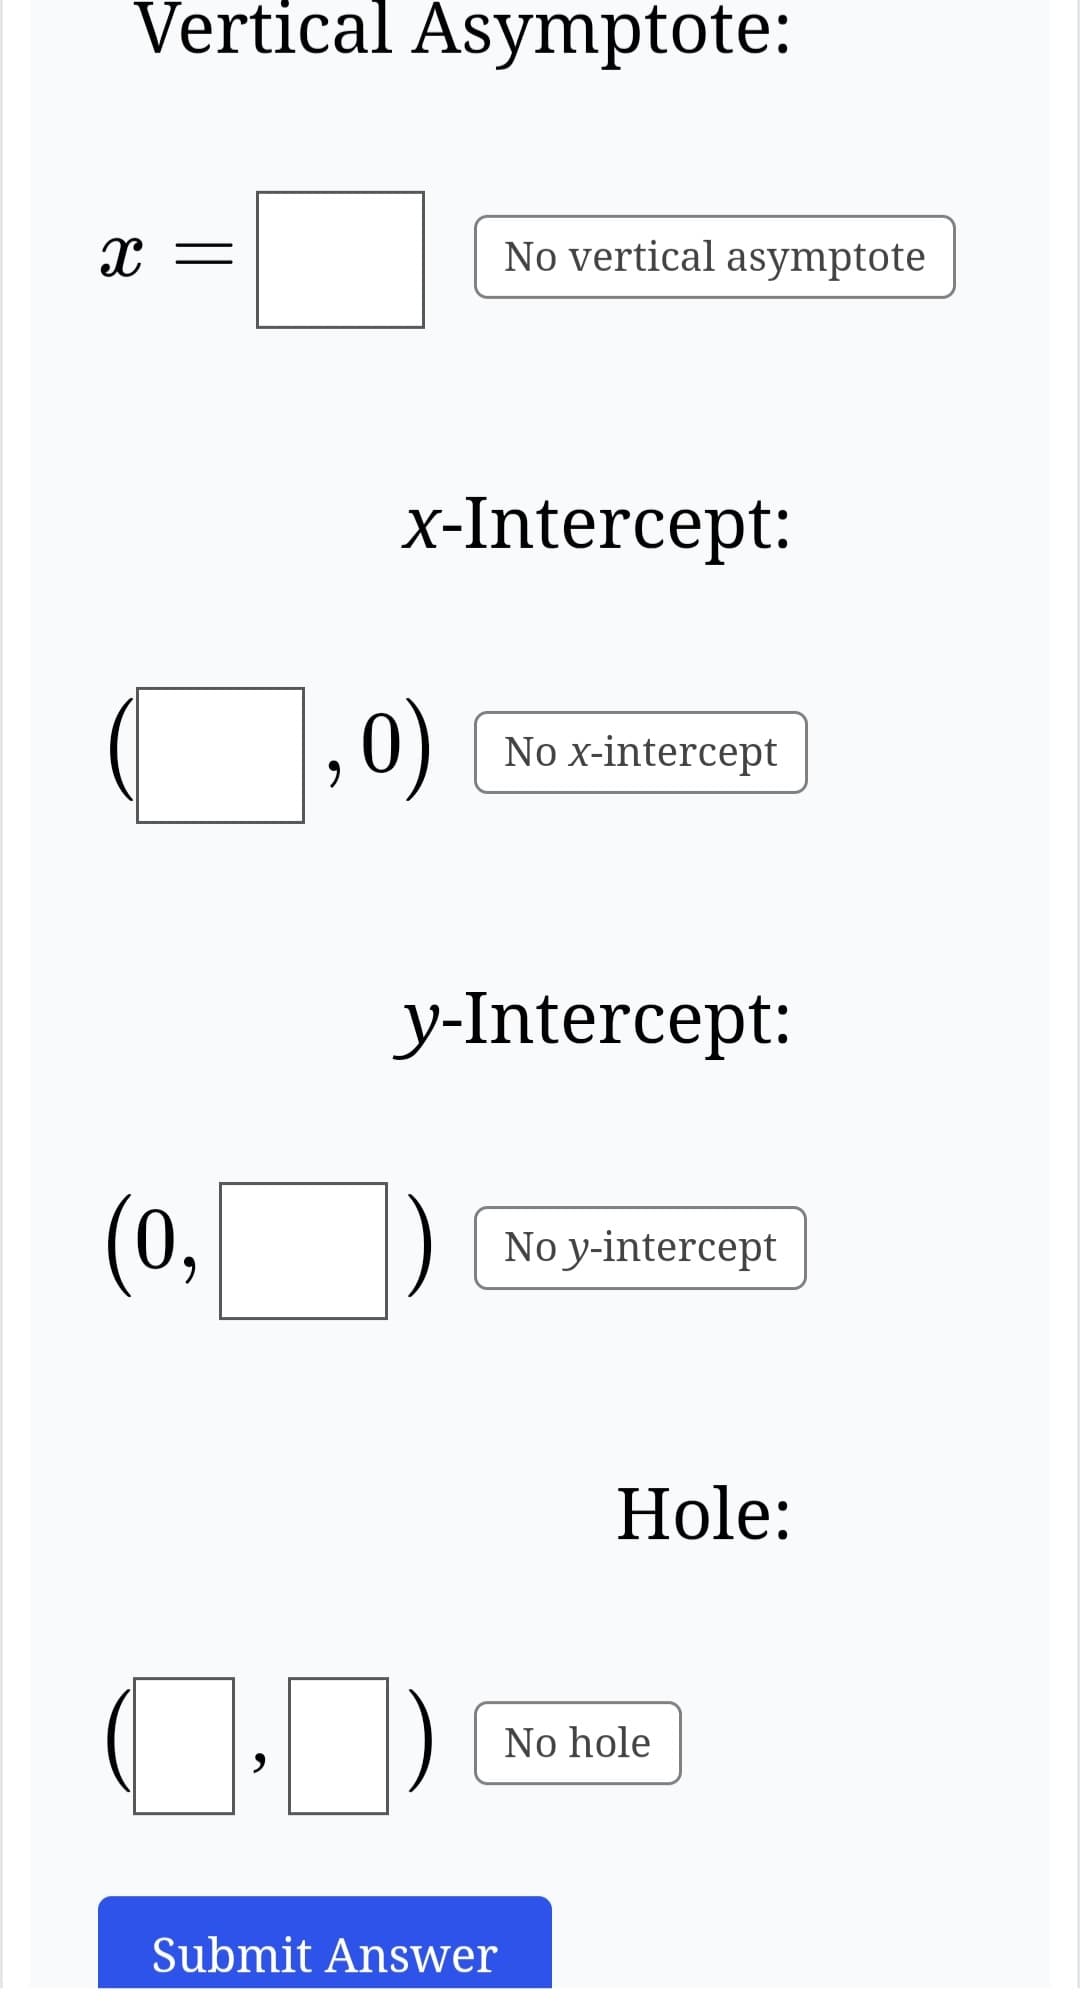 Vertical Asymptote:
X =
(0,
x-Intercept:
,0)
No vertical asymptote
Submit Answer
No x-intercept
y-Intercept:
No y-intercept
Hole:
No hole